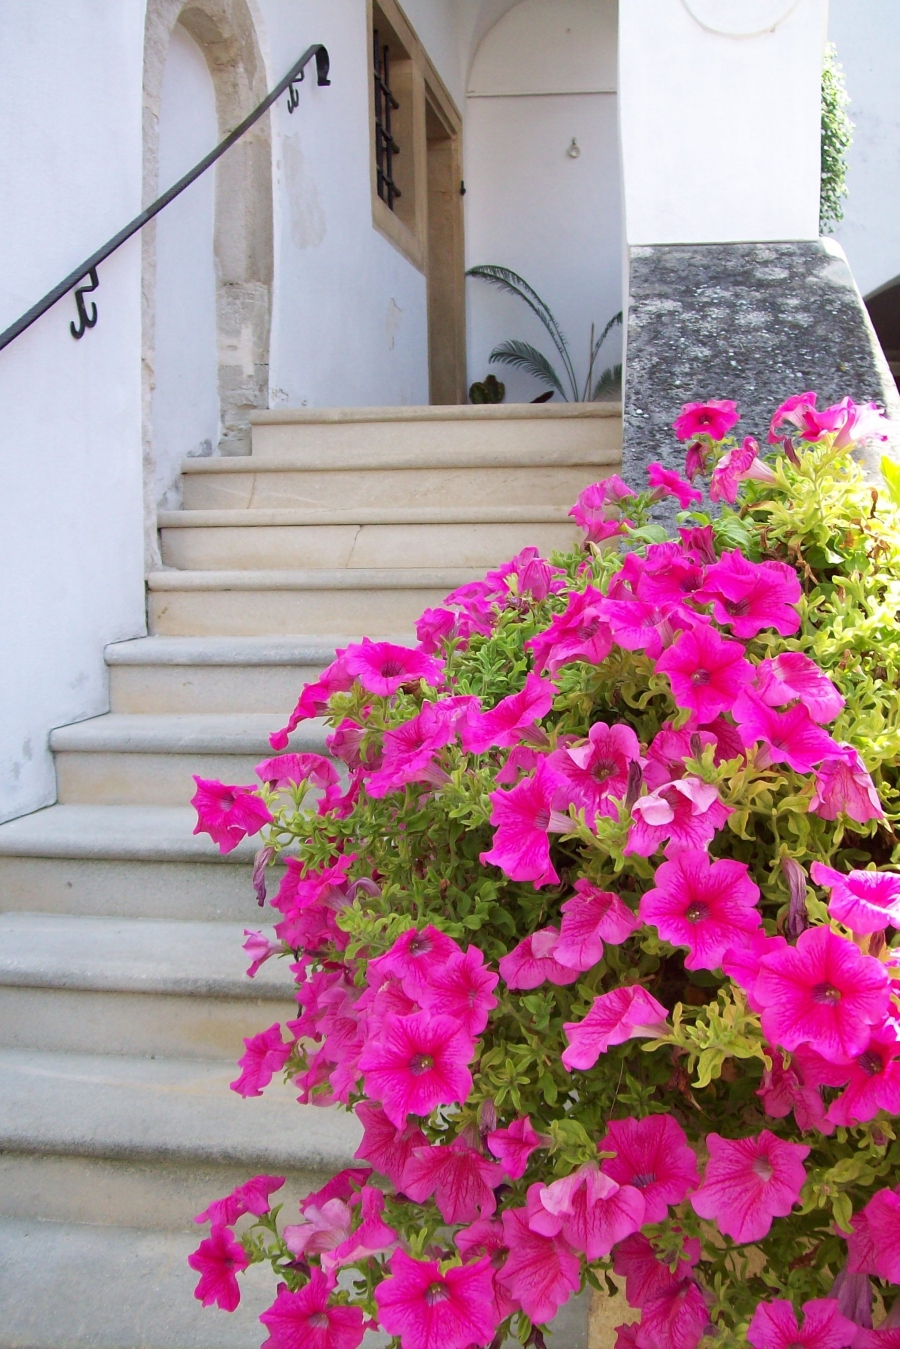 Schöne üppige Blütenpracht - ein kleiner Tipp für Neueinsteiger bei Balkonbepflanzung.